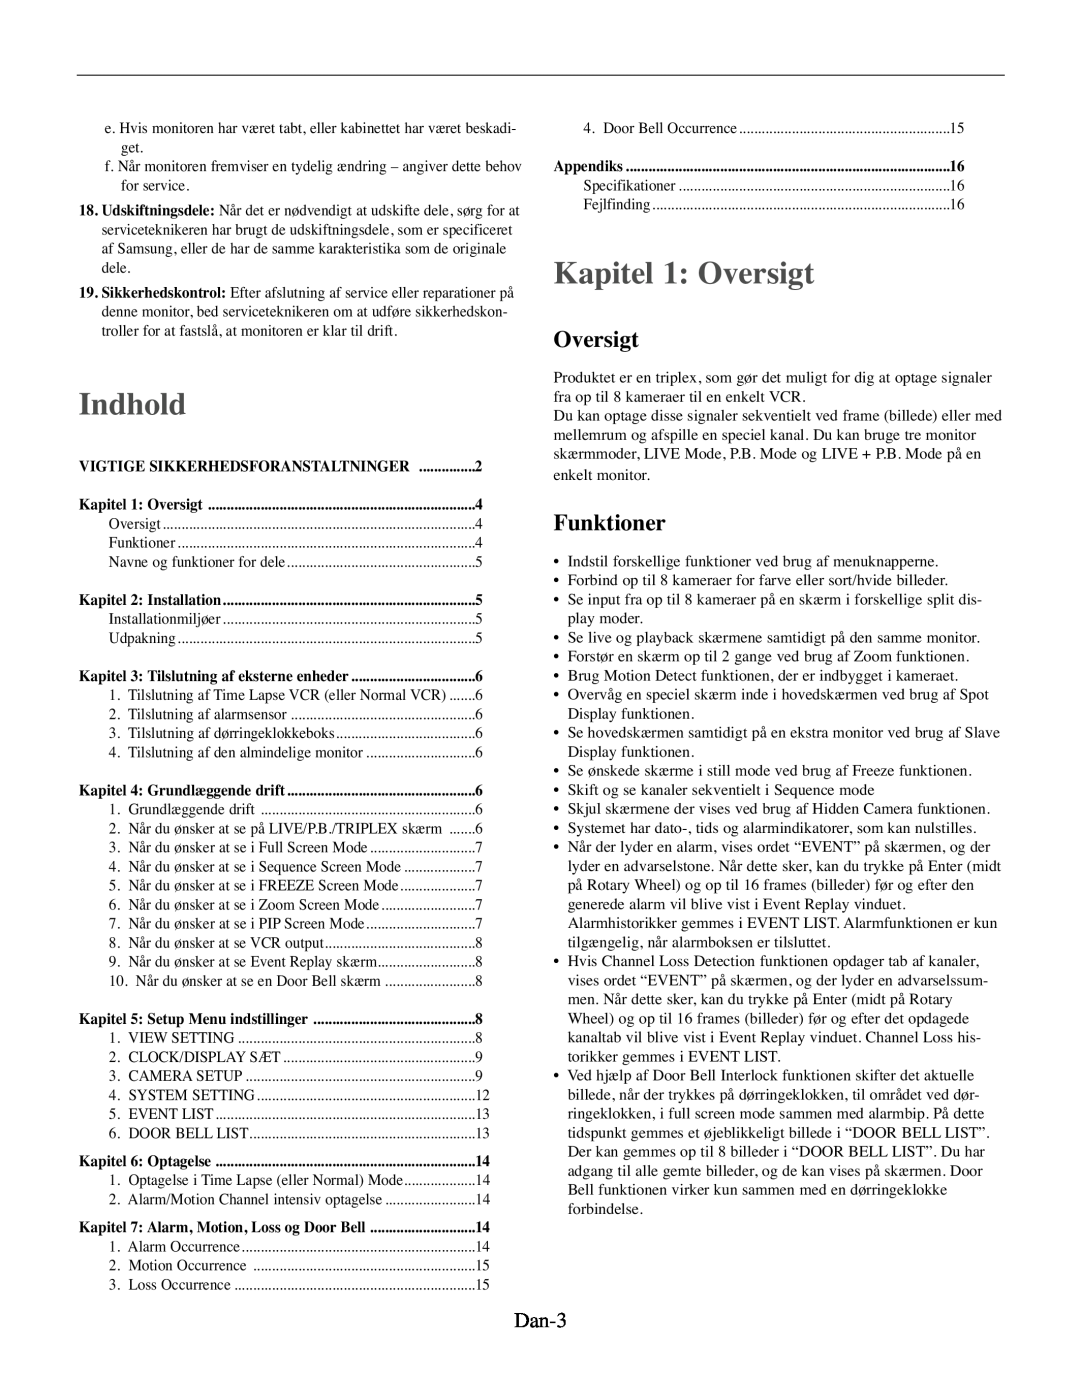 Samsung SMO-210MP/UMG, SMO-210TRP manual Indhold, Kapitel 1 Oversigt, Funktioner, Dan-3 